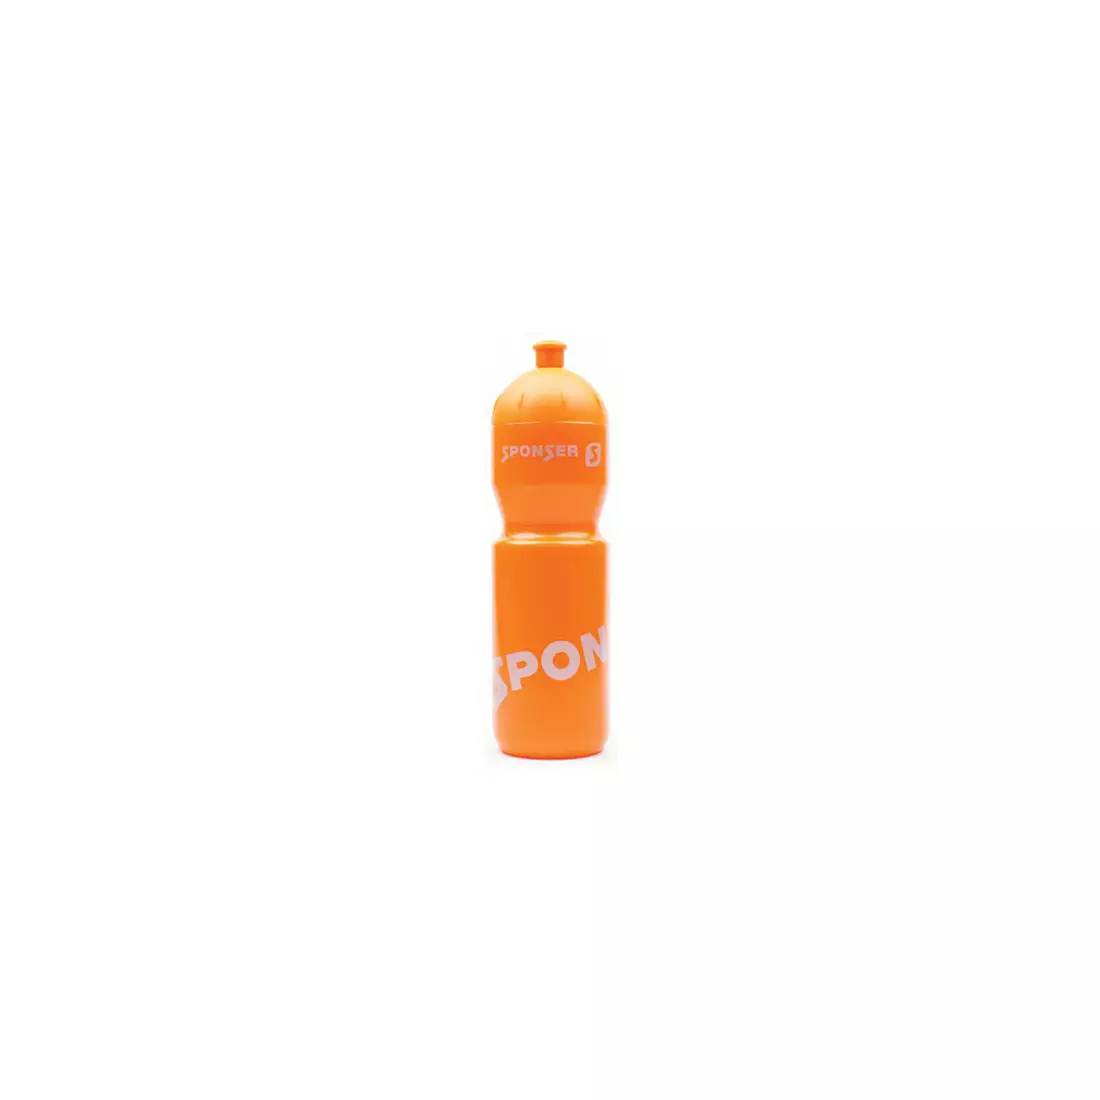 SPONSER Fahrrad Wasserflasche FARBIG 750 ml orange